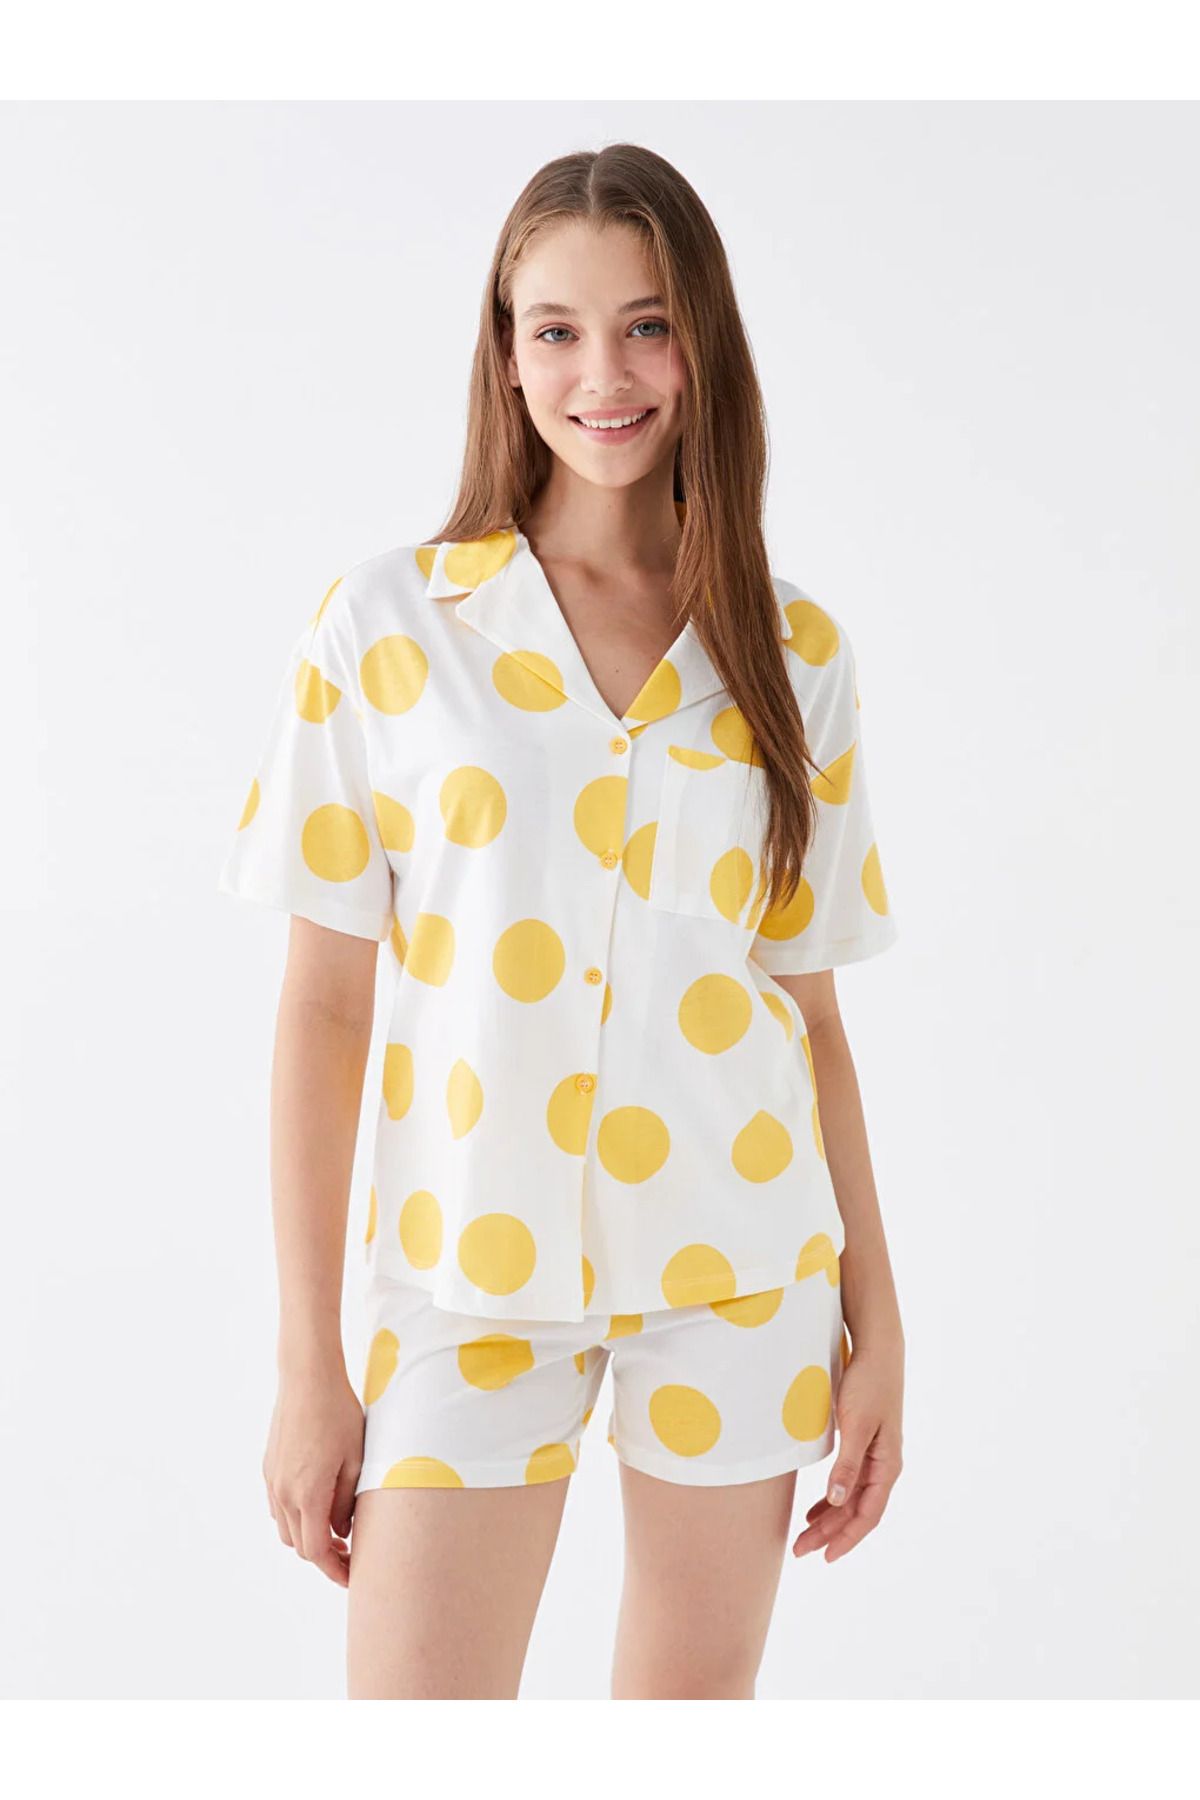 LC Waikiki GSM storE'den LCW DREAM Gömlek Yaka Puantiyeli Kısa Kollu Kadın Şortlu Pijama Takımı